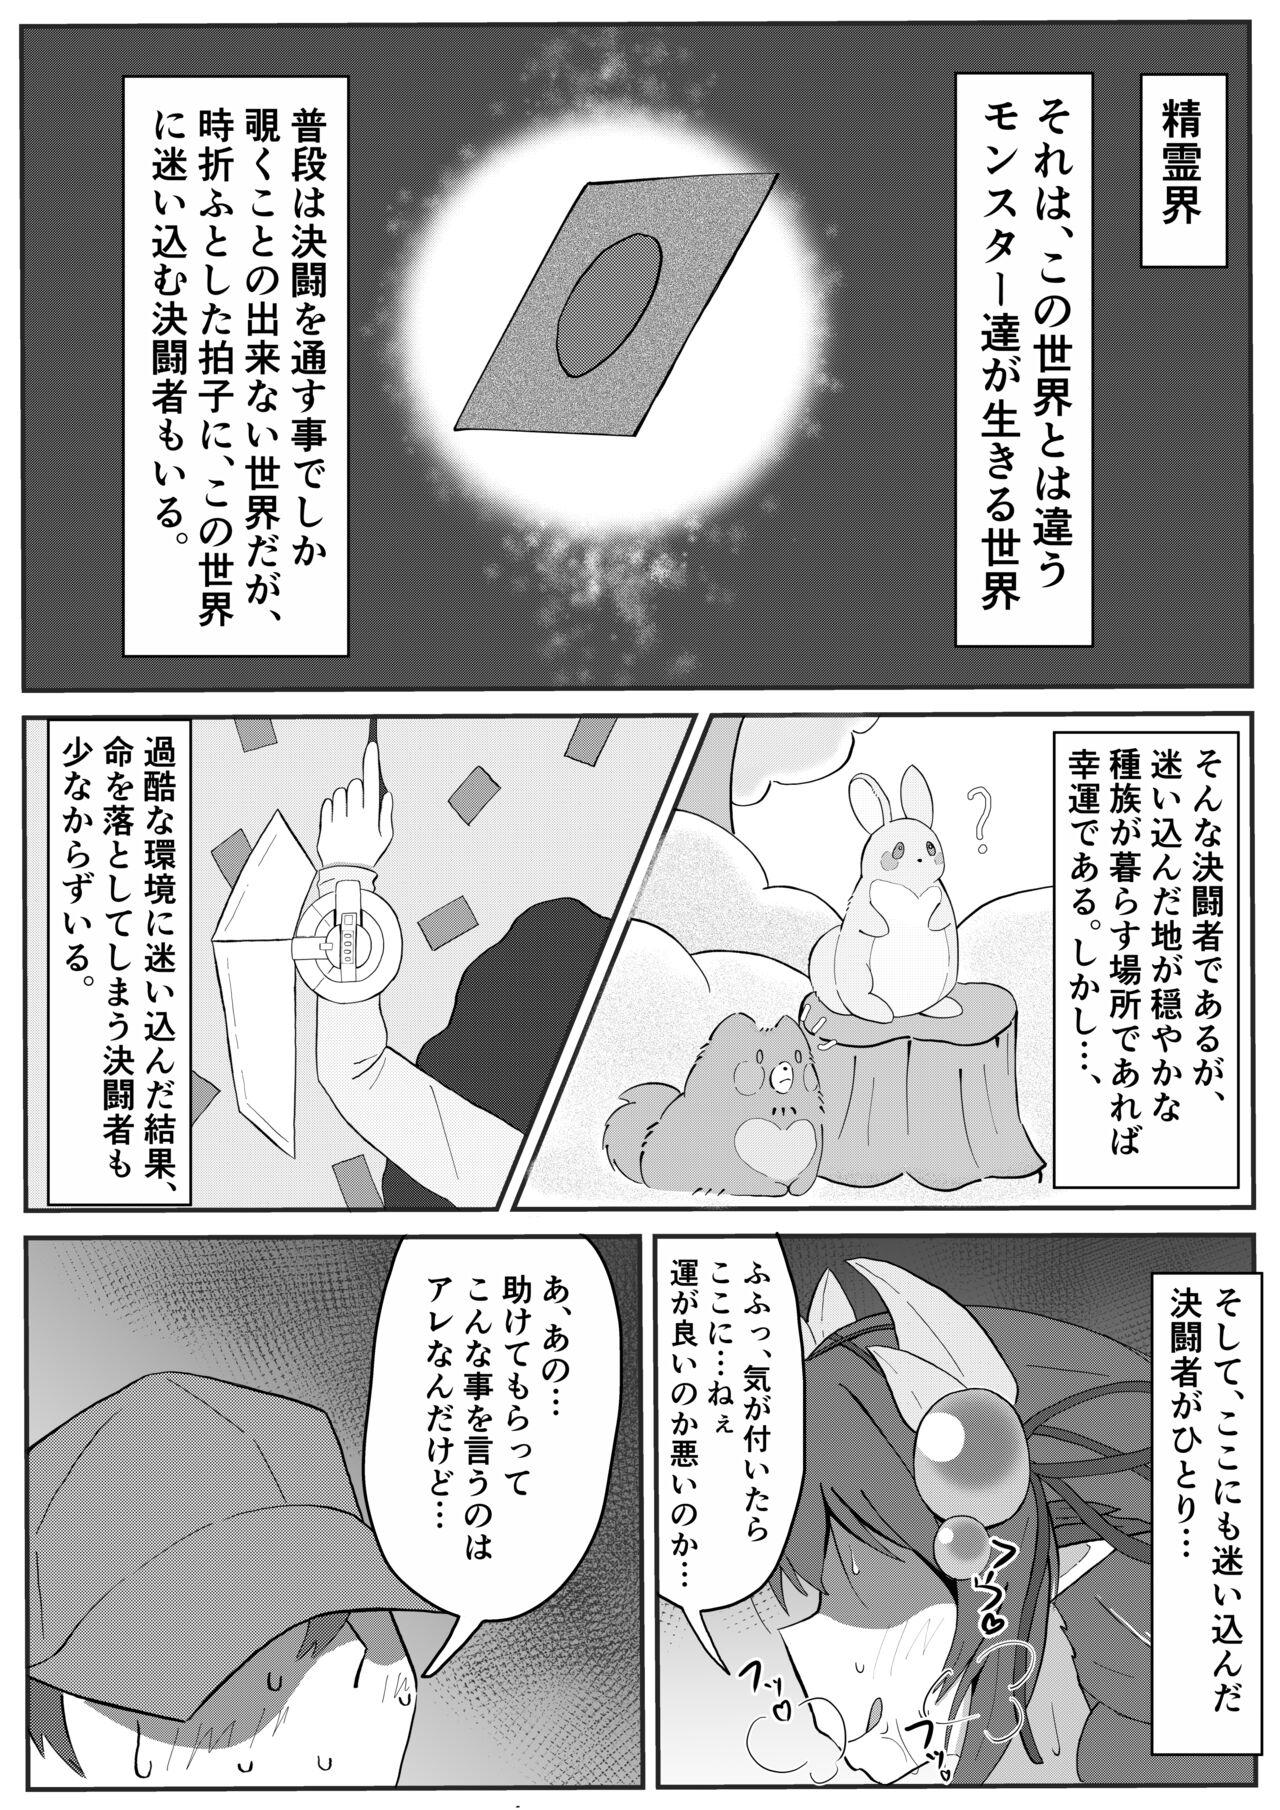 Art Atrax ni Tsukamatte Oishiku Taberareru Ippan Kettousha no Manga - Yu-gi-oh Cash - Page 1